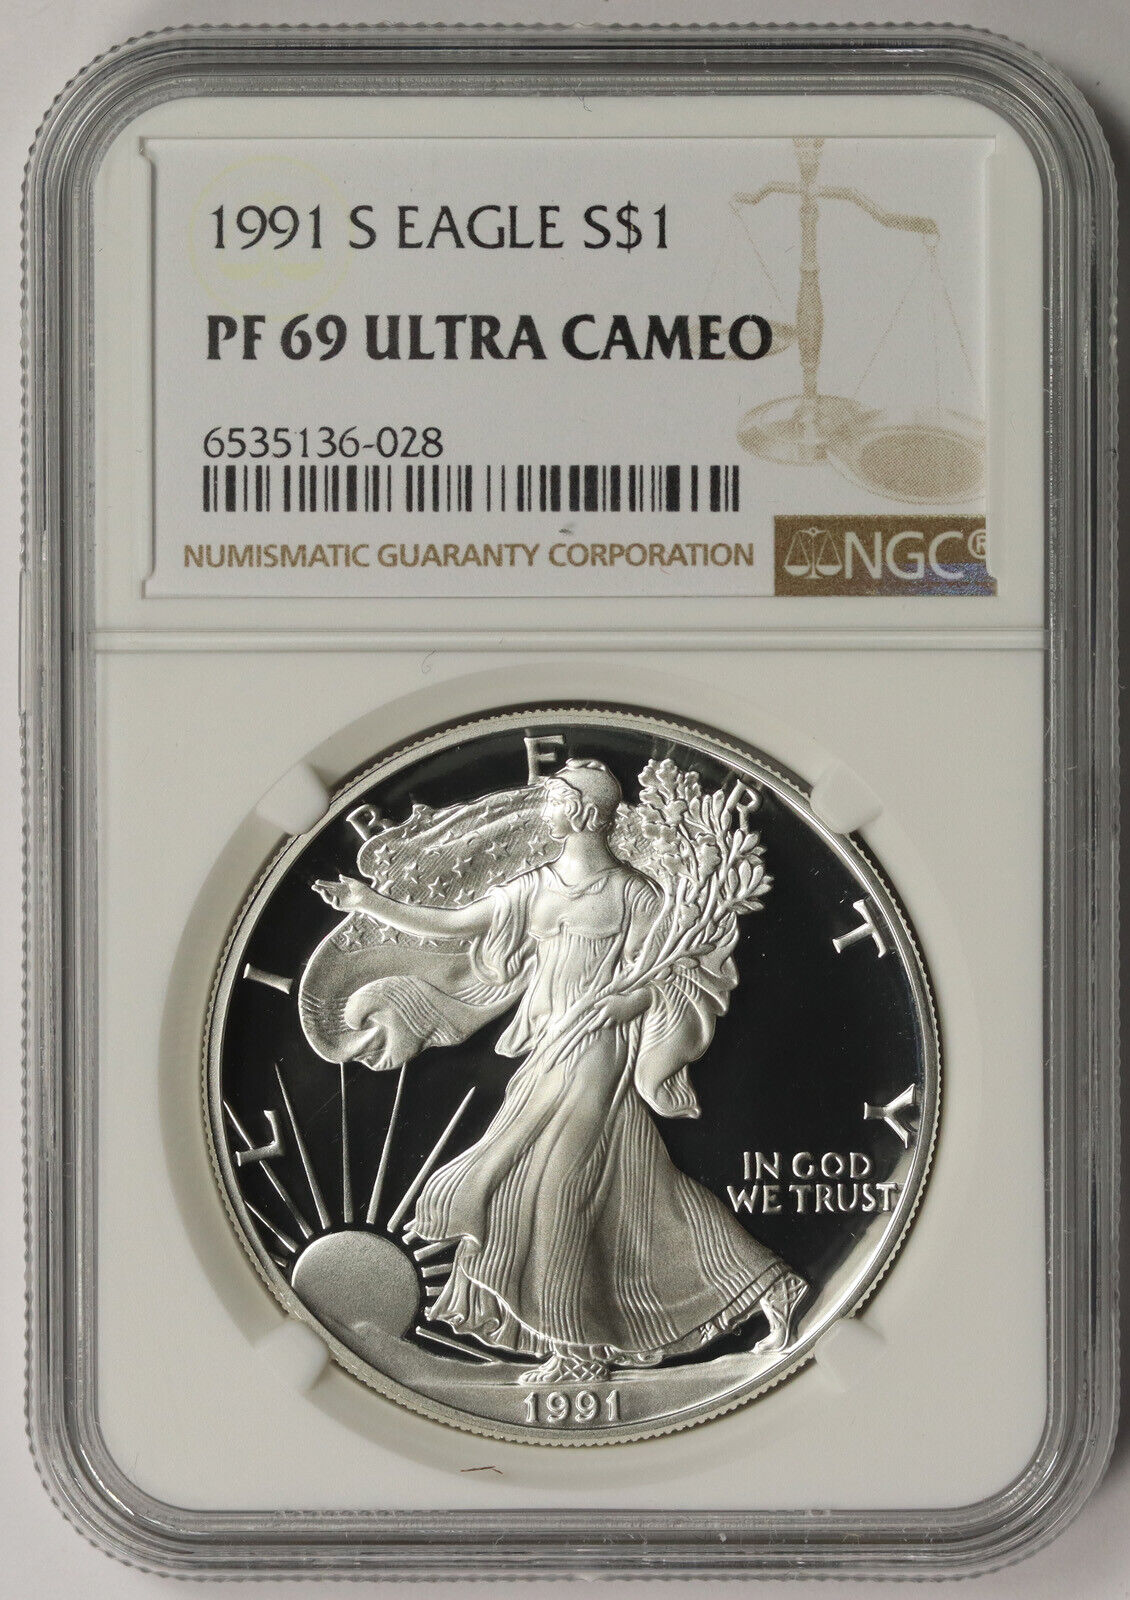 1991-S American Silver Eagle $1 Proof PF 69 Ultra Cameo NGC Ograniczona sprzedaż, wybuchowe kupowanie